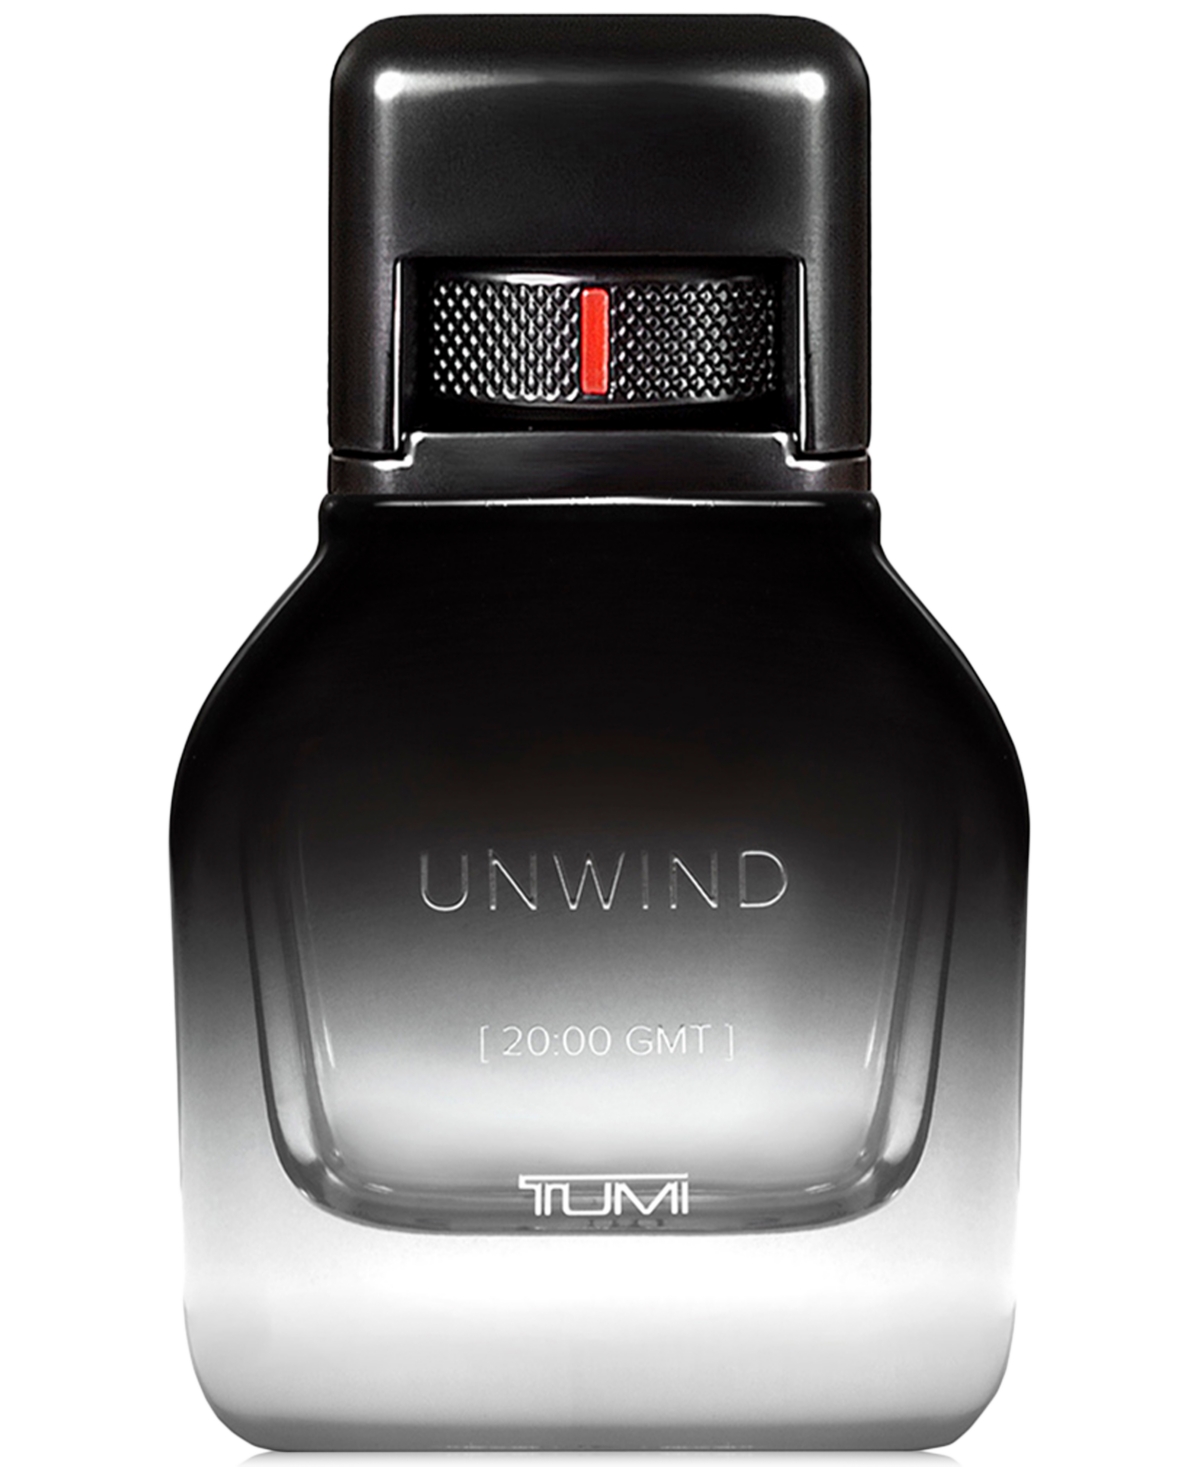 Unwind [20:00 Gmt] Tumi Eau De Parfum, 1.7 oz.